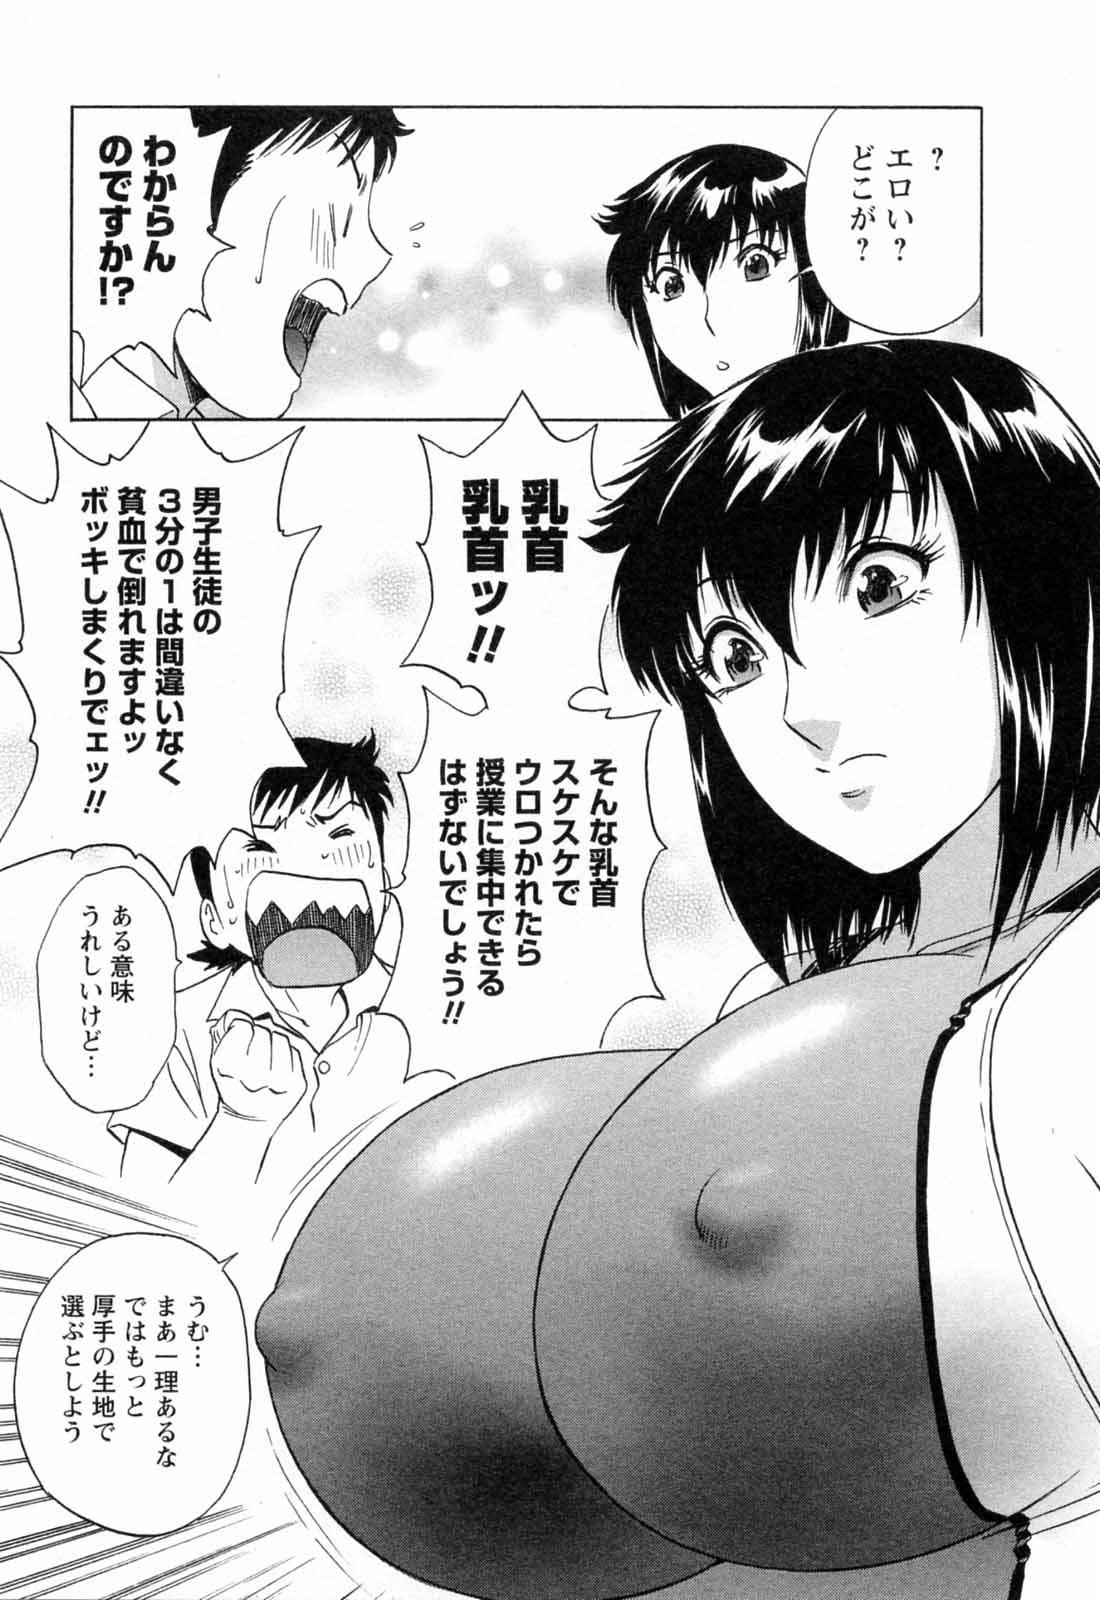 [Hidemaru] Mo-Retsu! Boin Sensei (Boing Boing Teacher) Vol.5 118